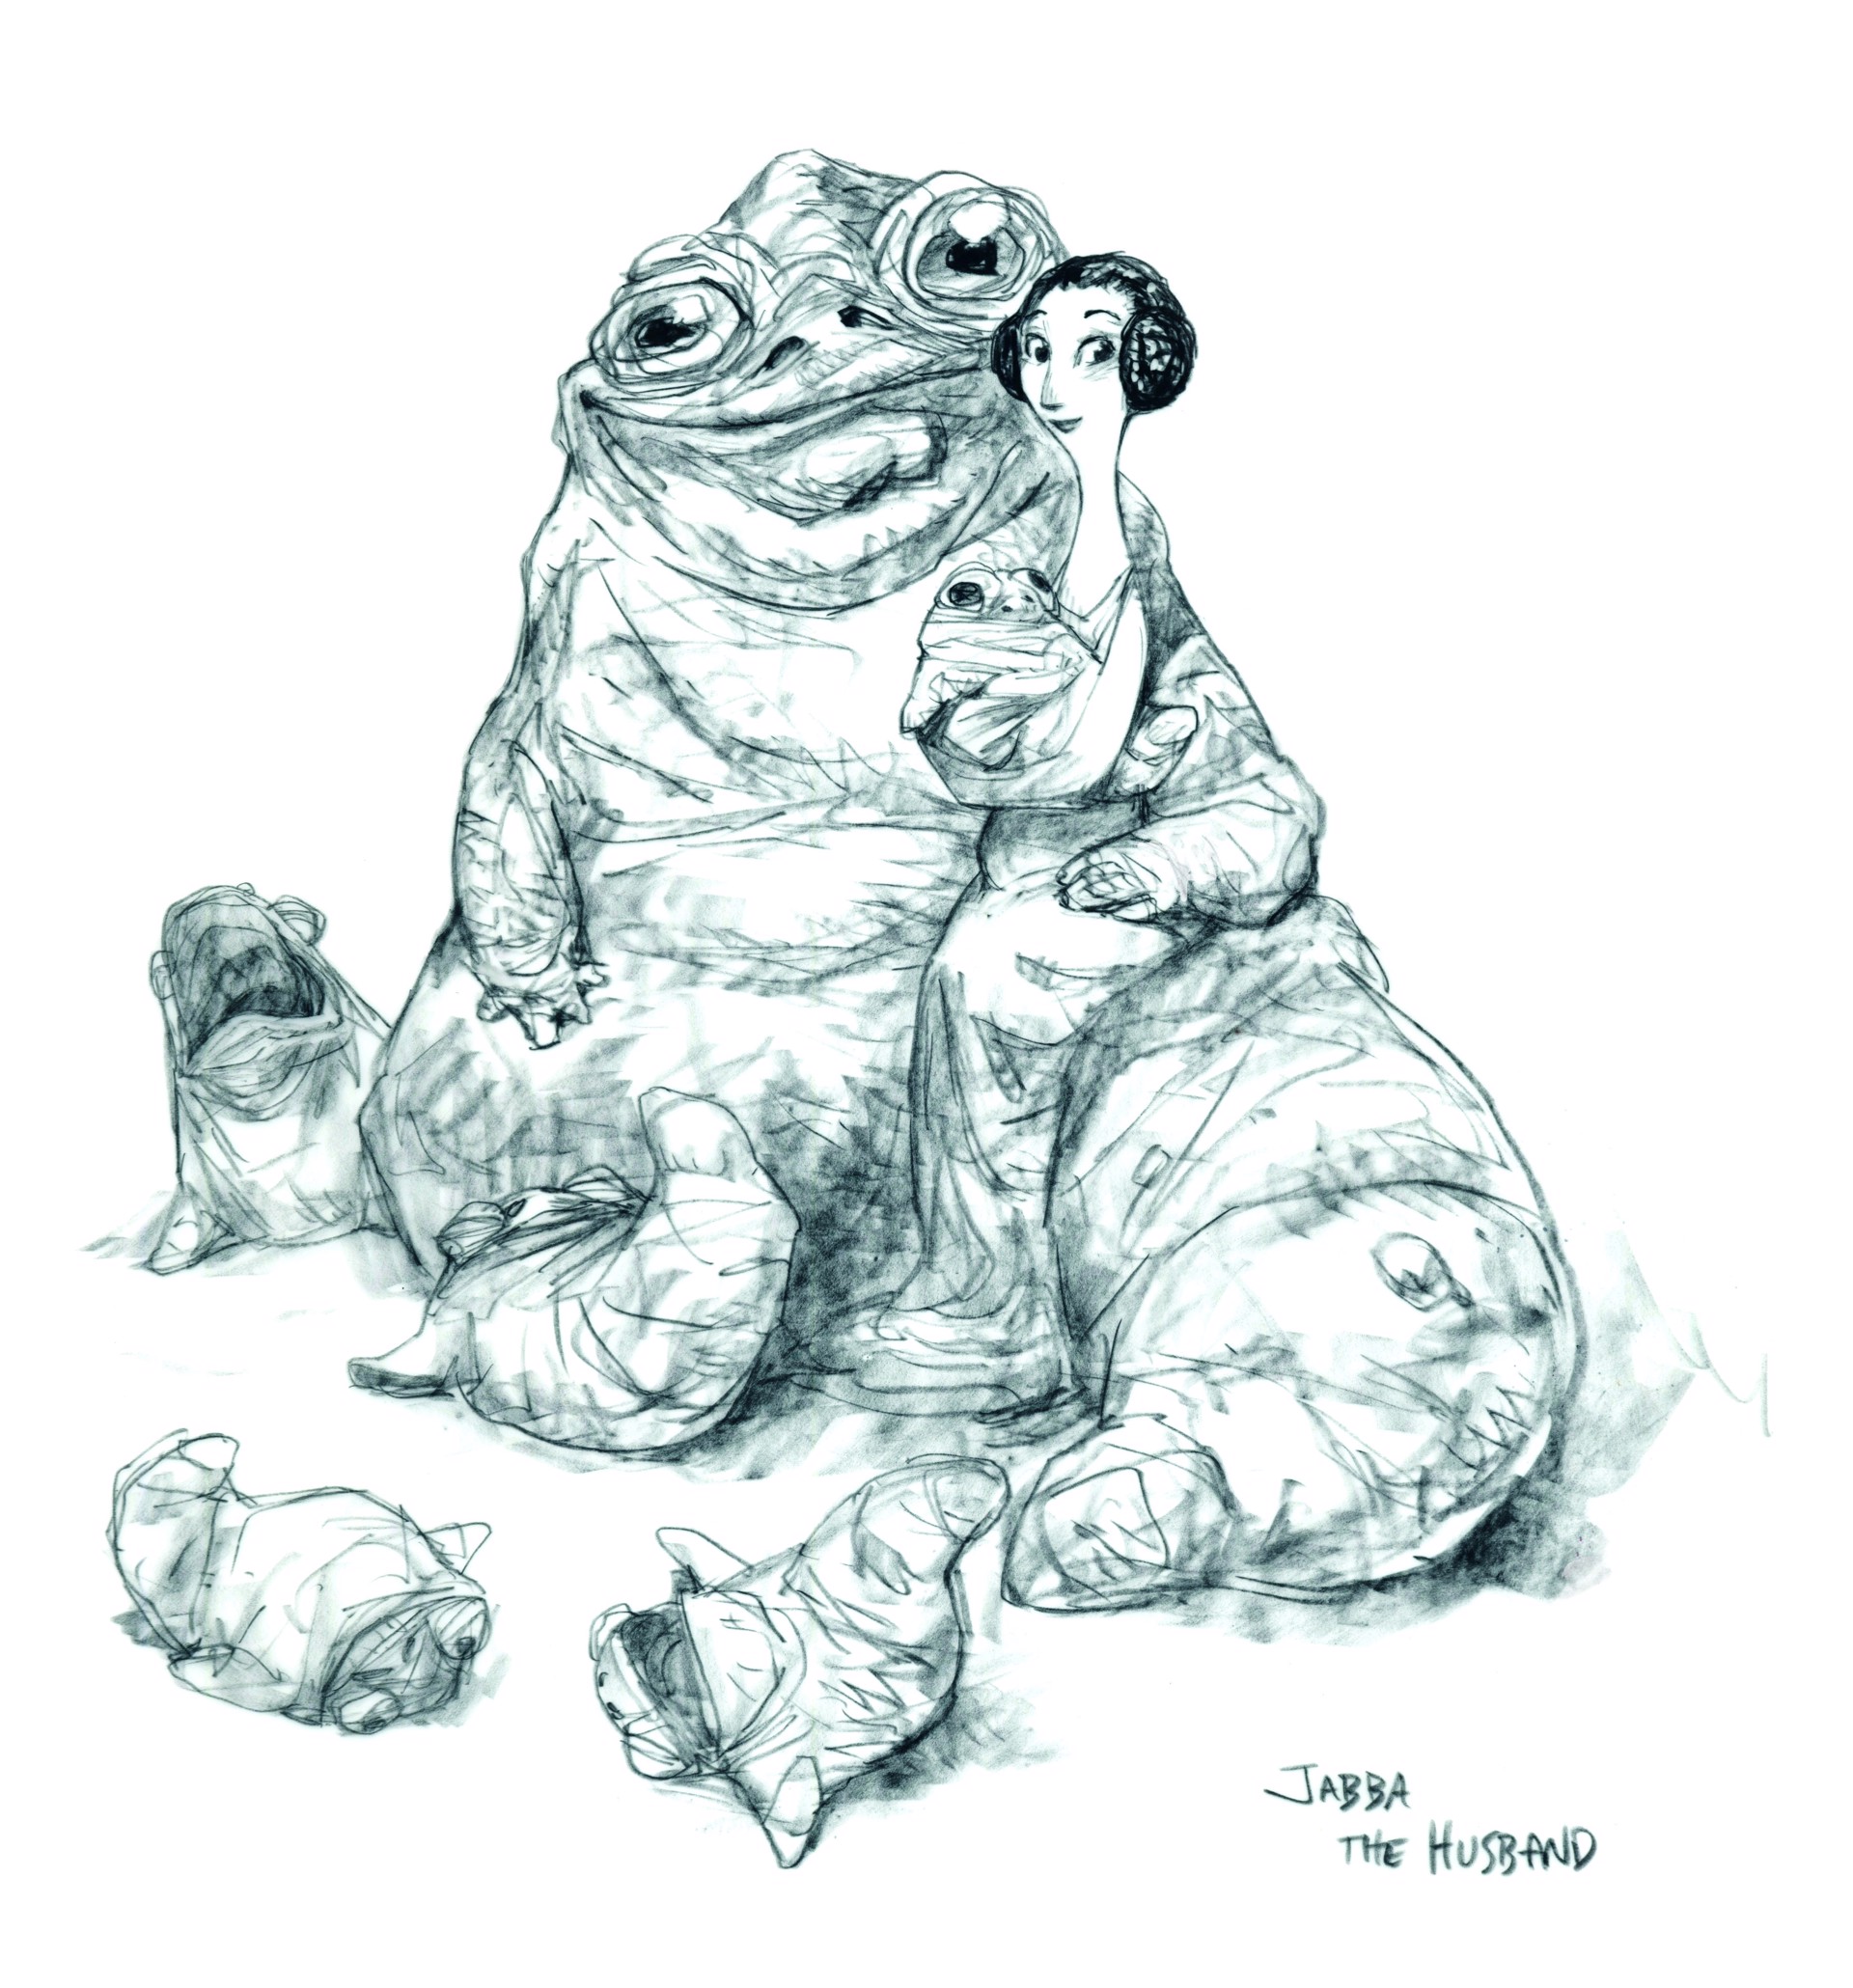 Jabba the husband by Peter de Sève